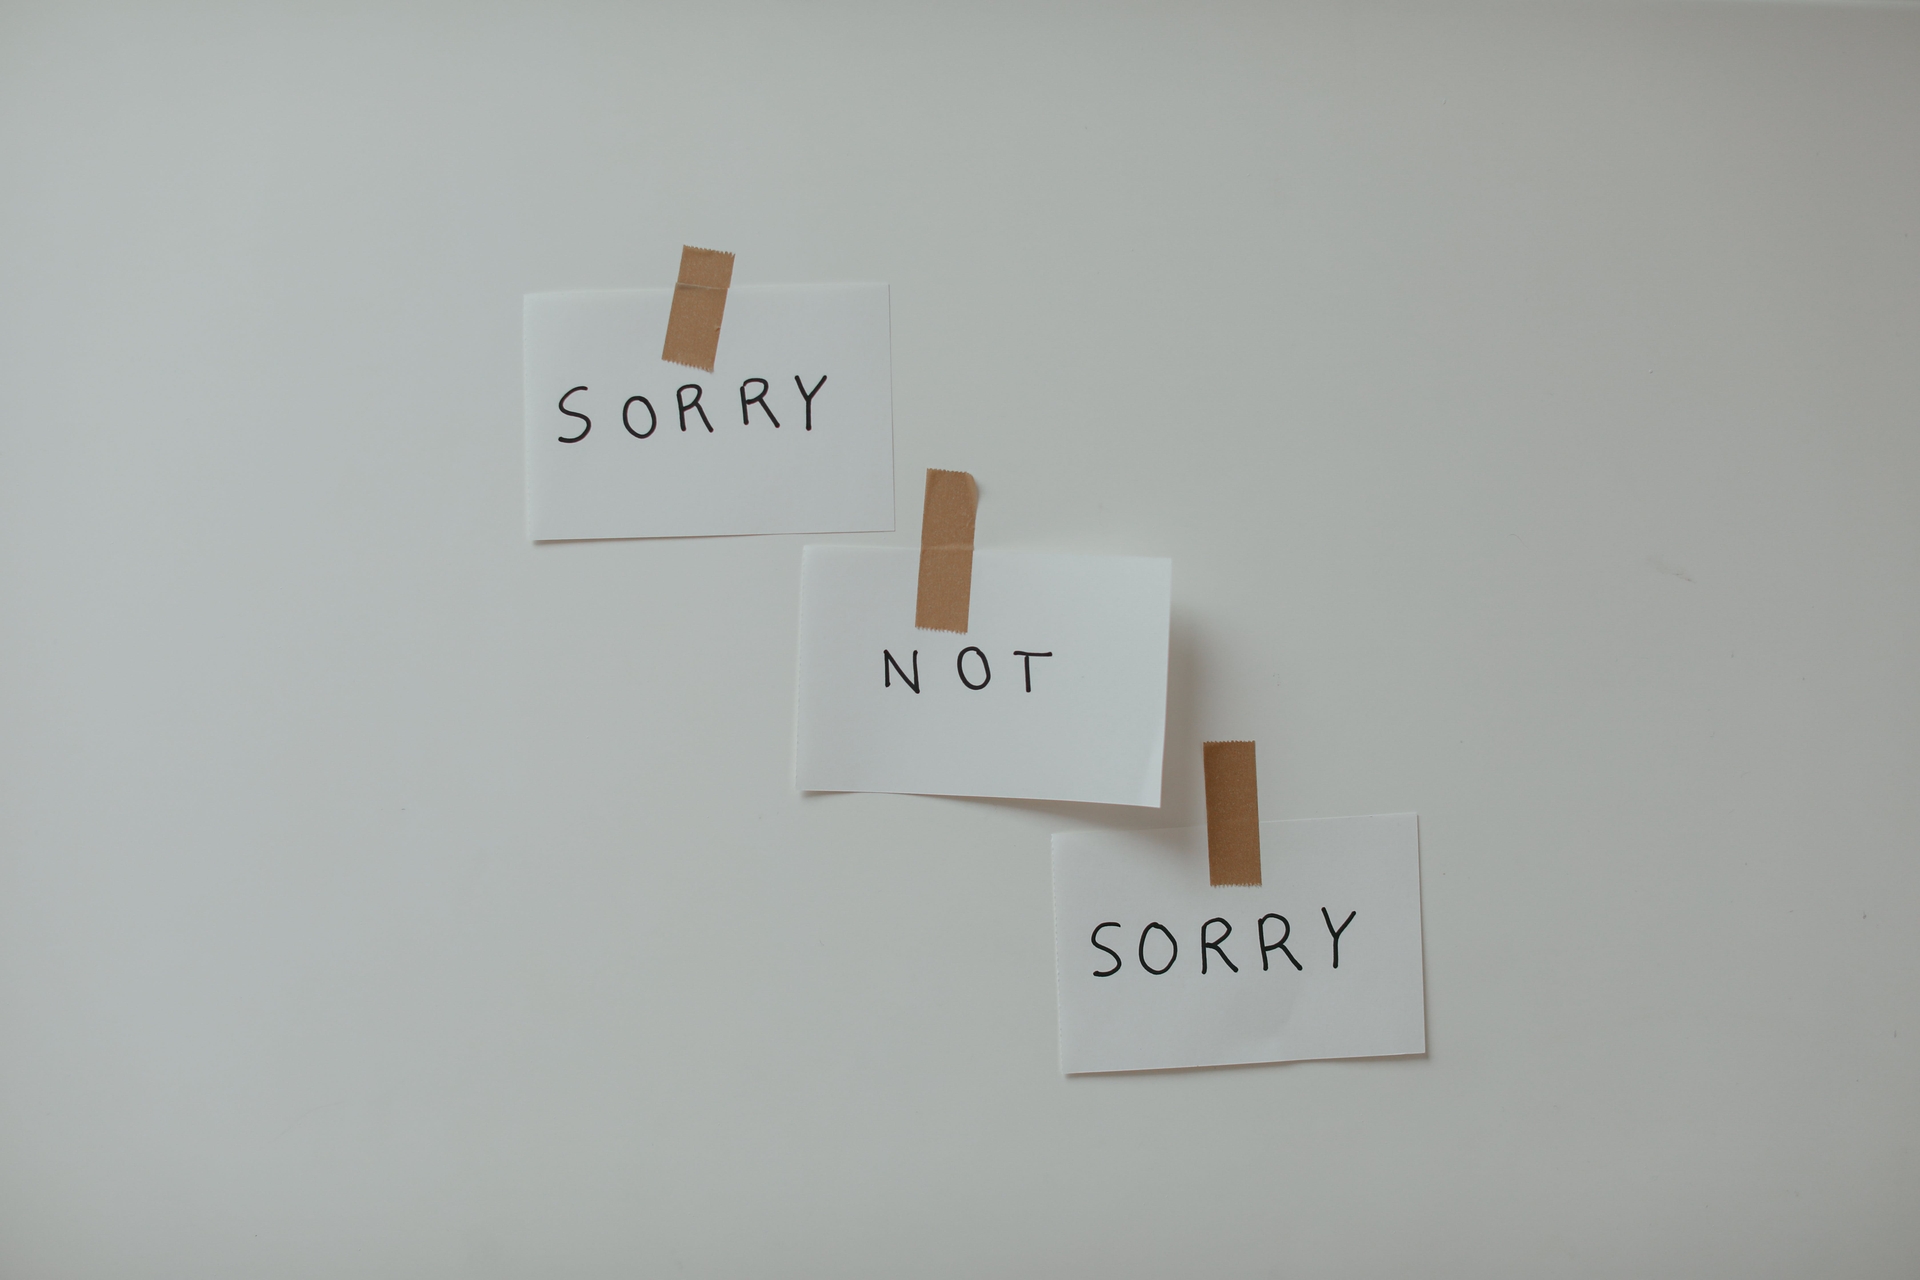 "Văn hóa" xin lỗi: Vì sao xin hoài mà vẫn còn lỗi?